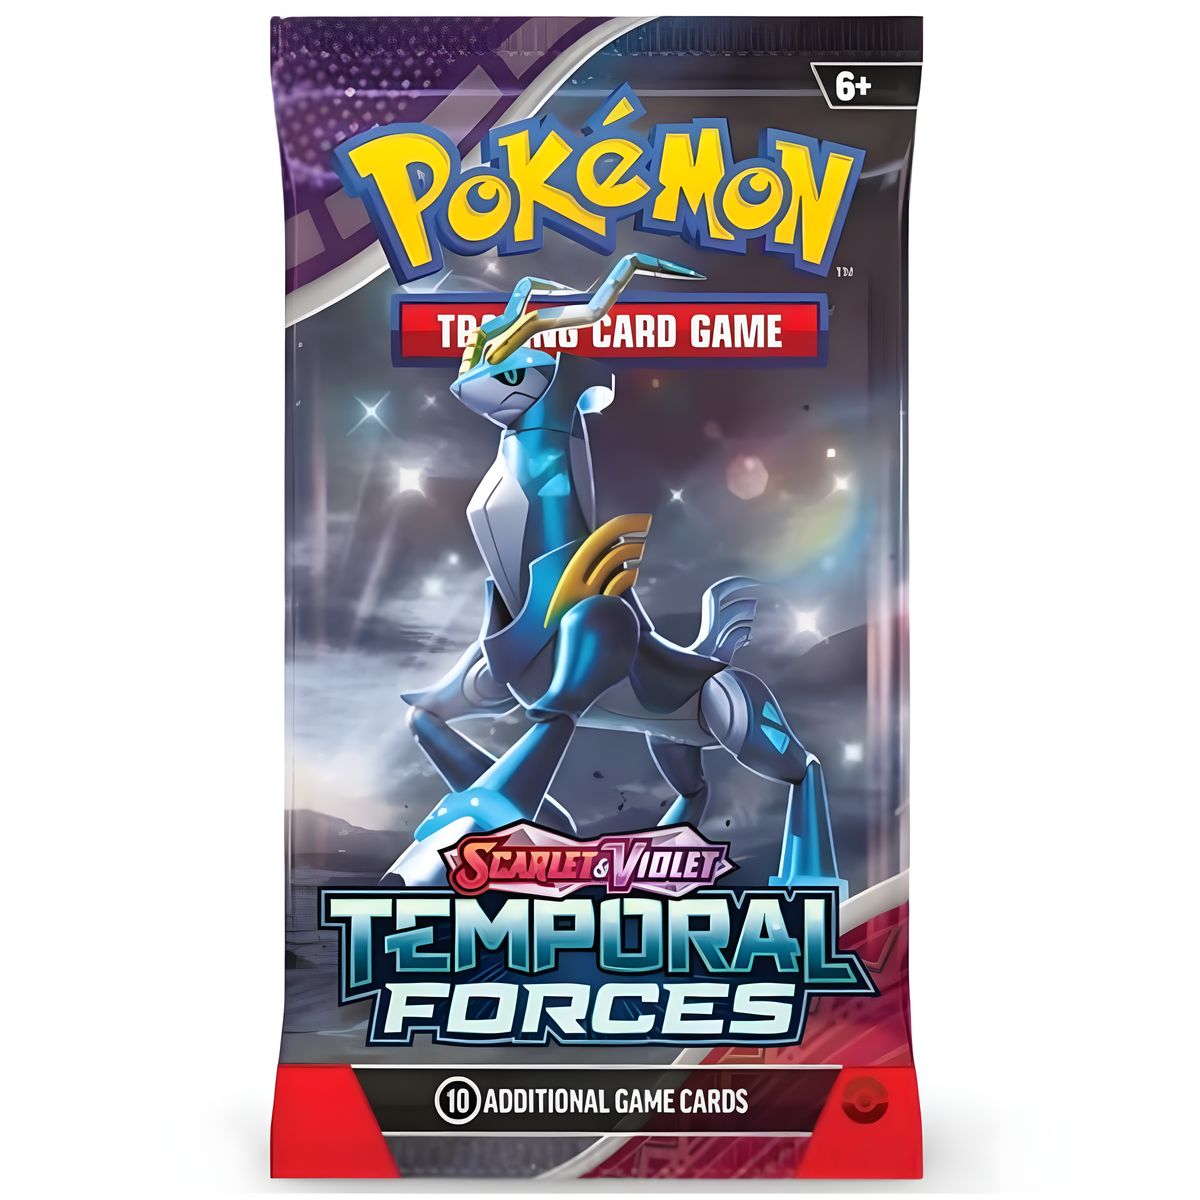 Pokémon - Temporal Forces Booster